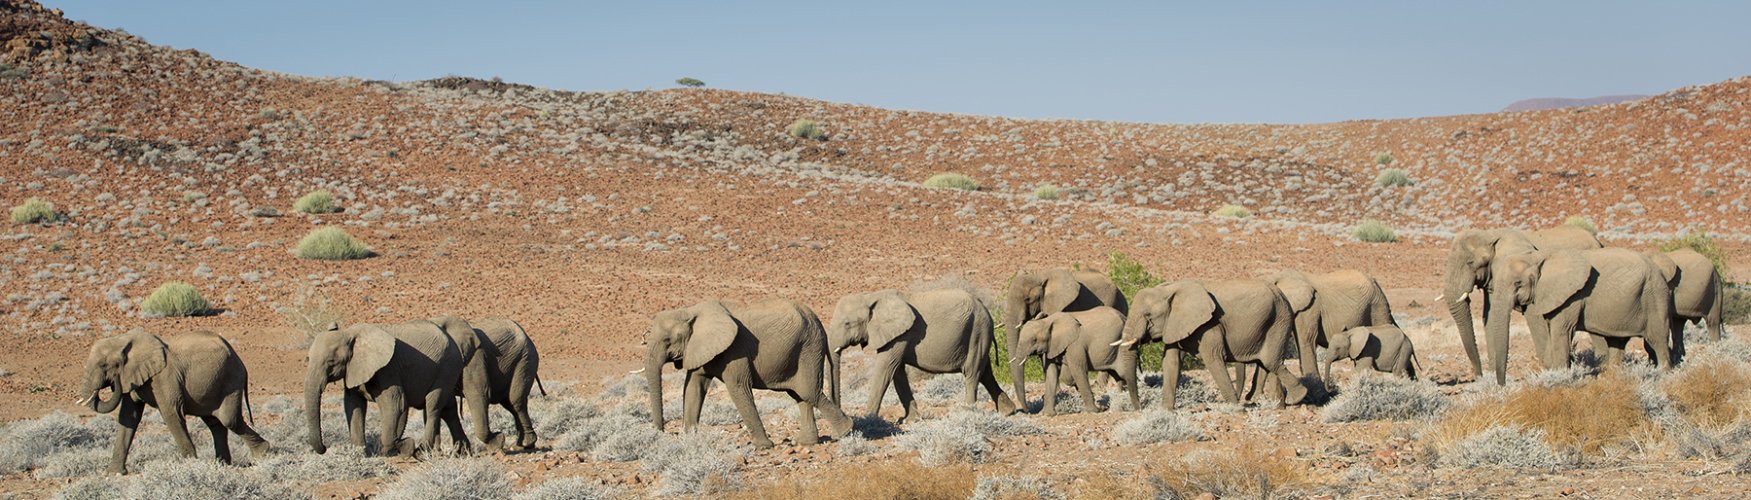 Desert elephants... 1, 2, 3,...